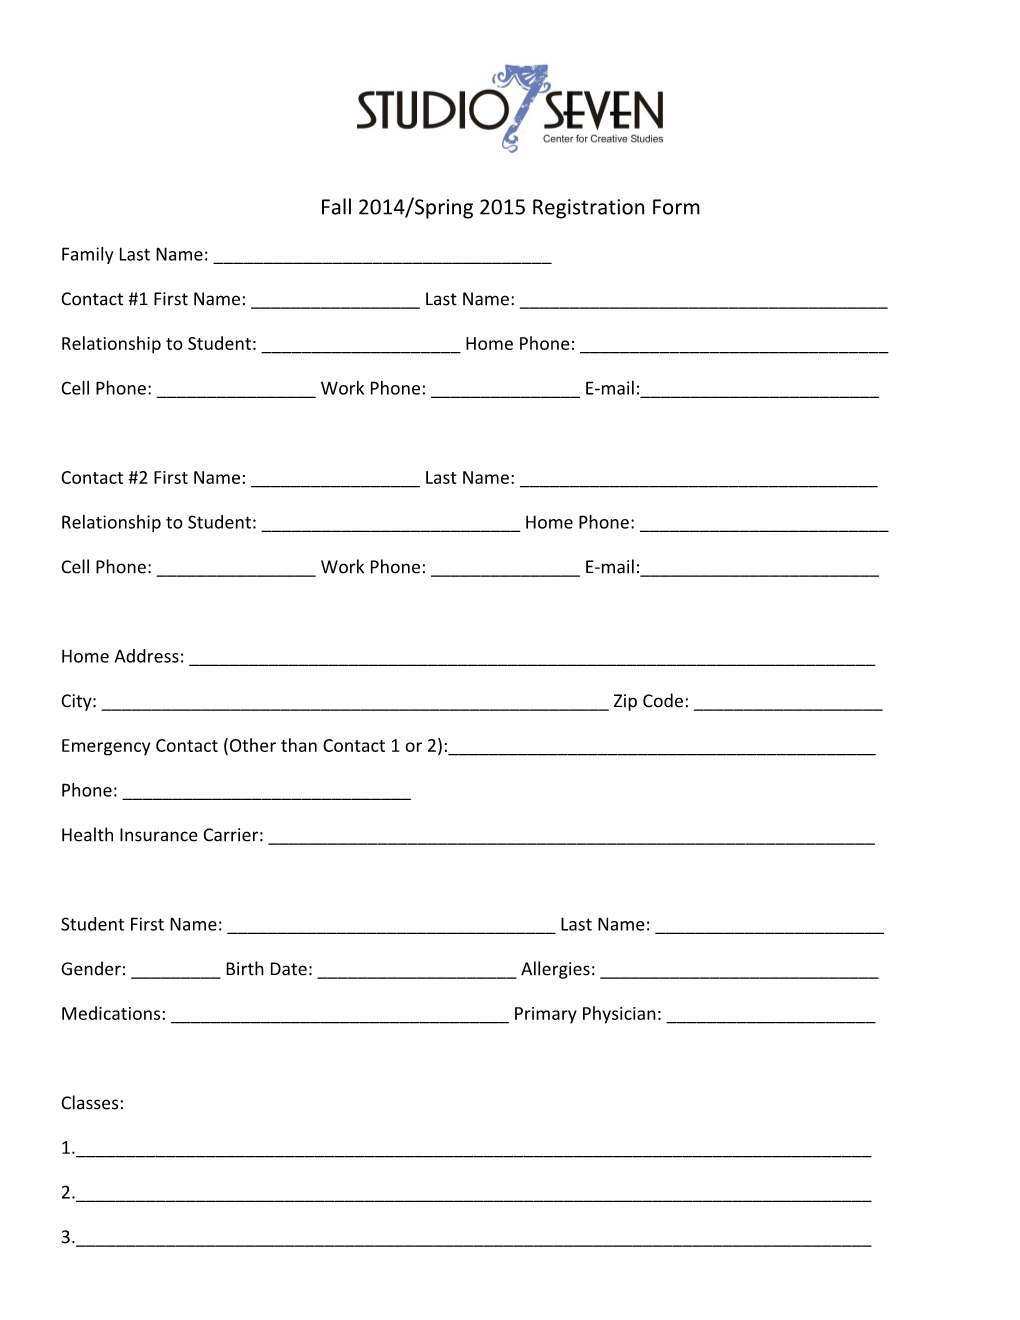 Fall 2014/Spring 2015 Registration Form